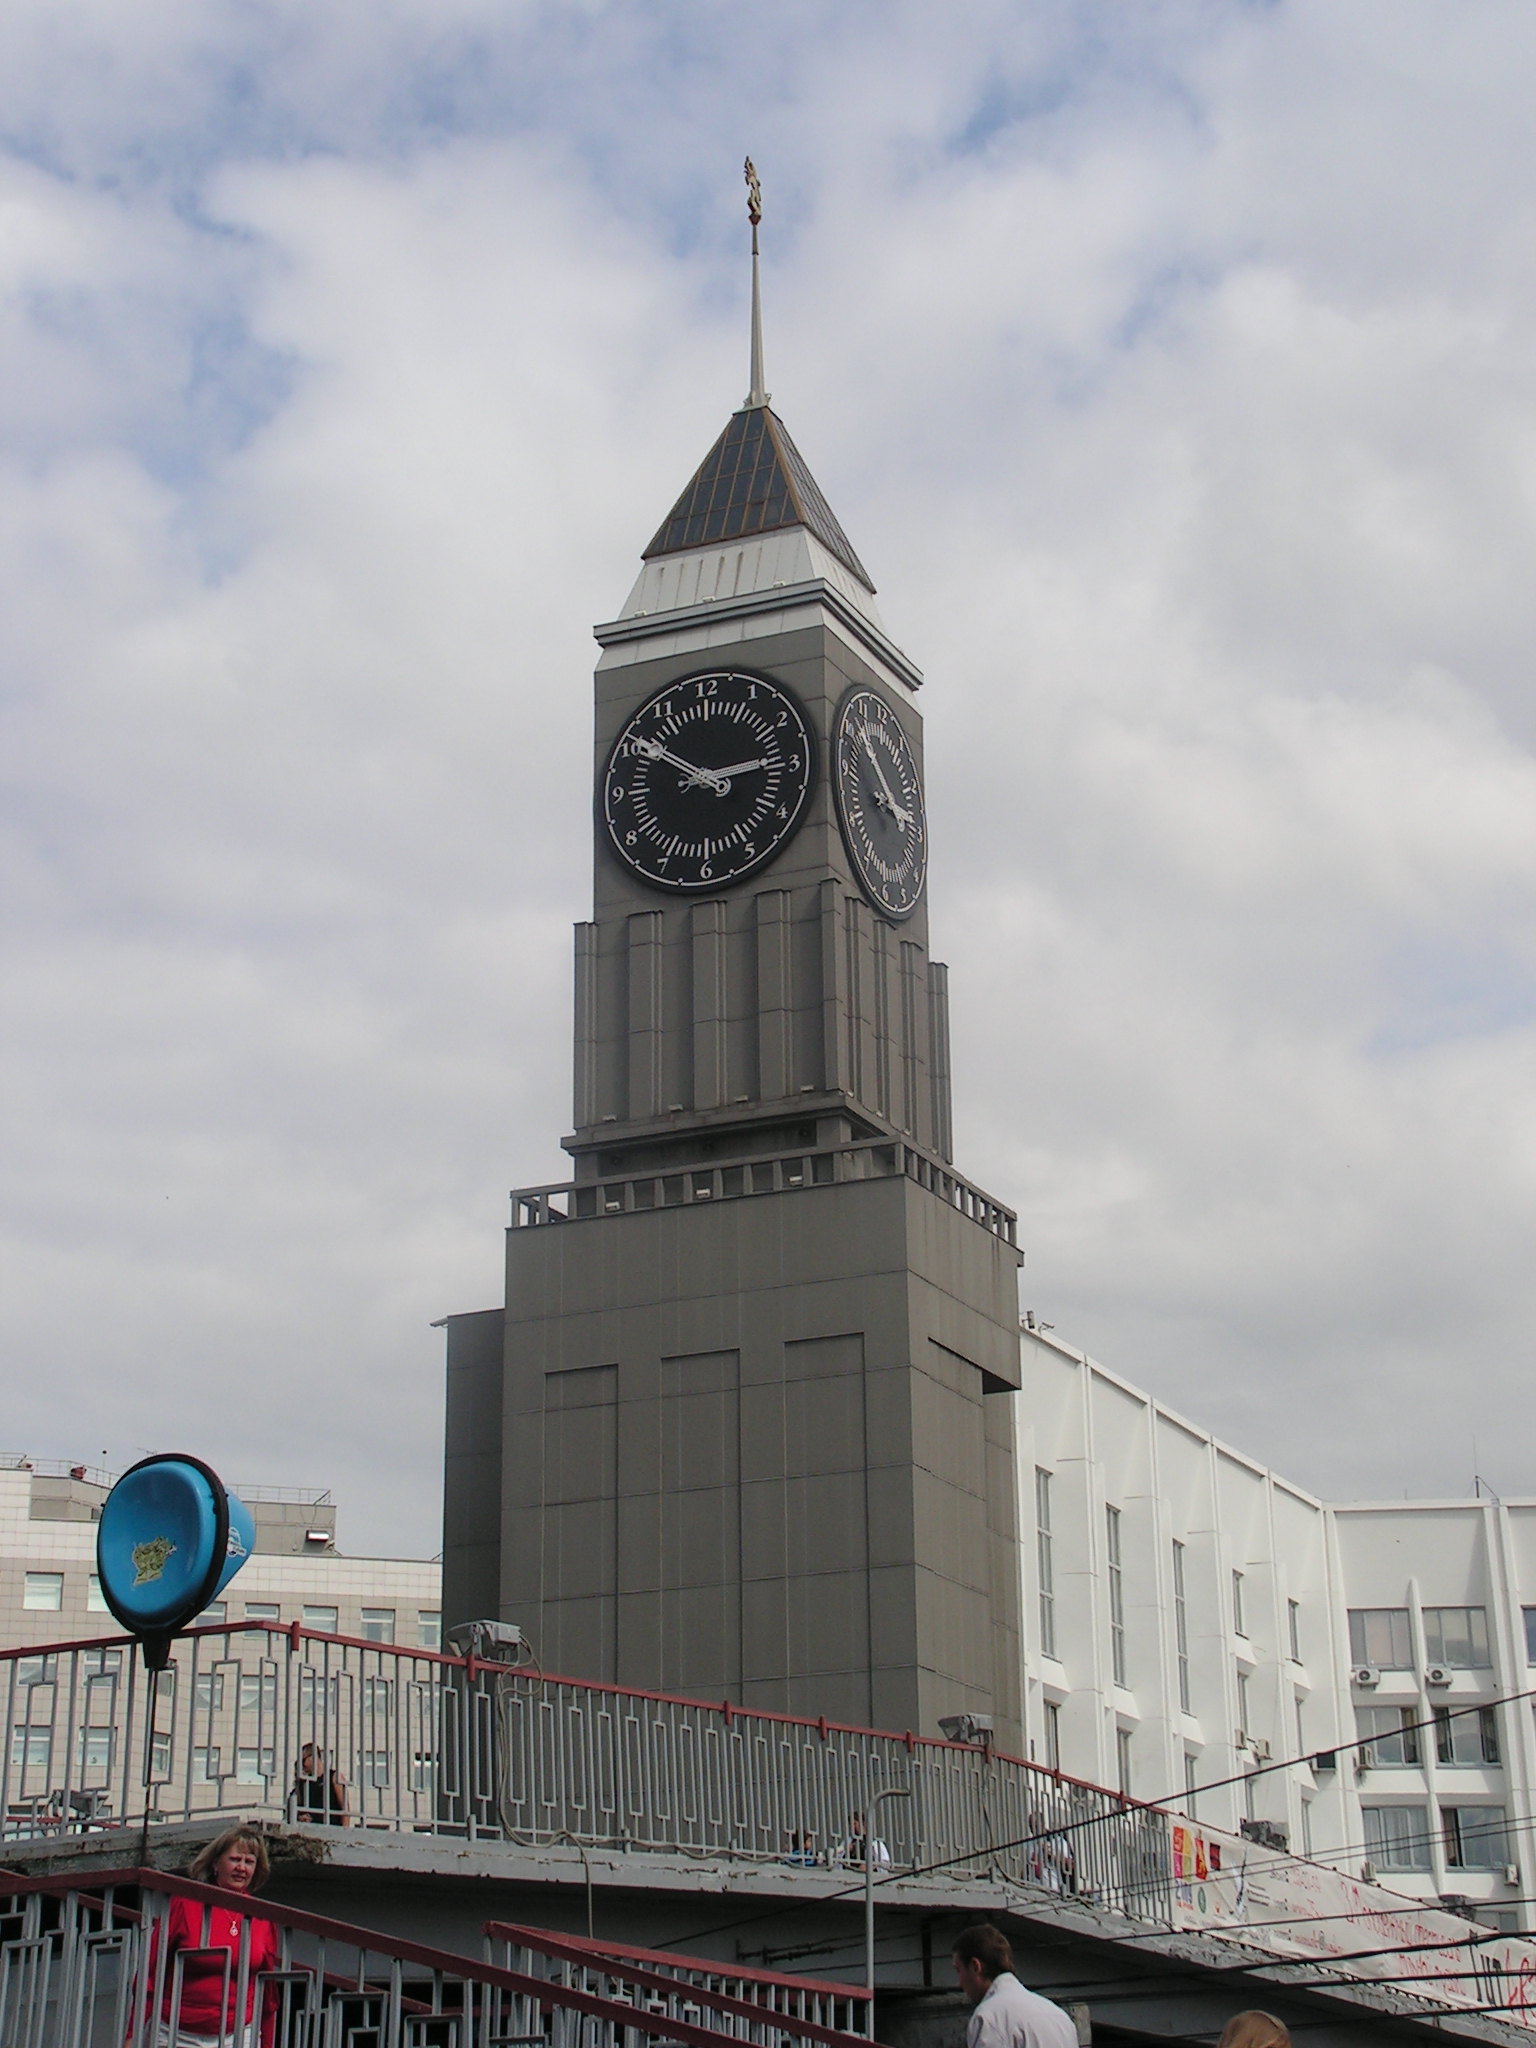 Башня с часами в красноярске